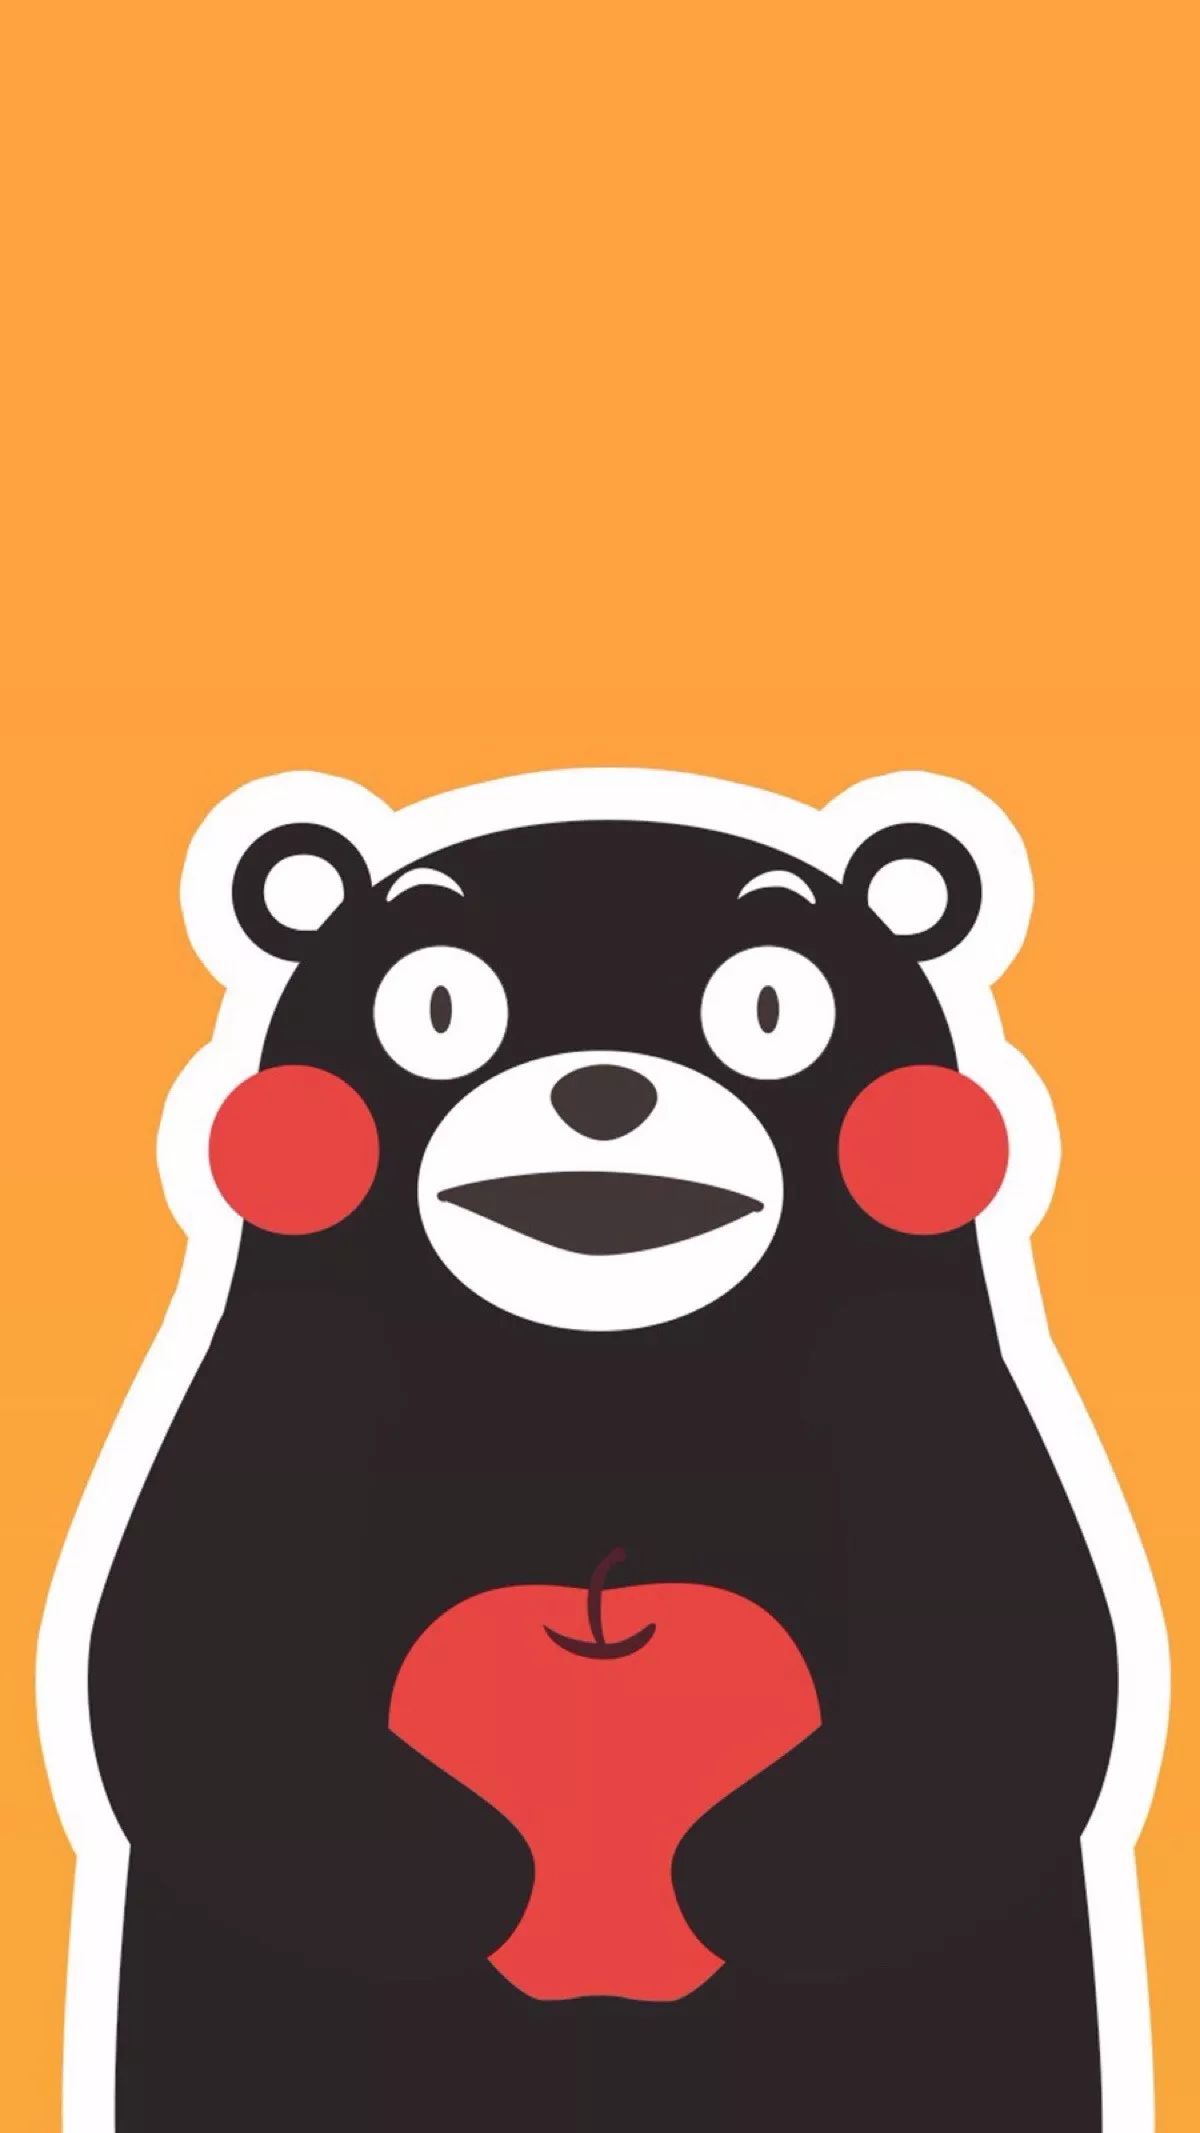 熊本熊官方中文换名 从“酷MA萌”改成“熊本熊”|观察者网|熊本熊|熊本县_新浪新闻